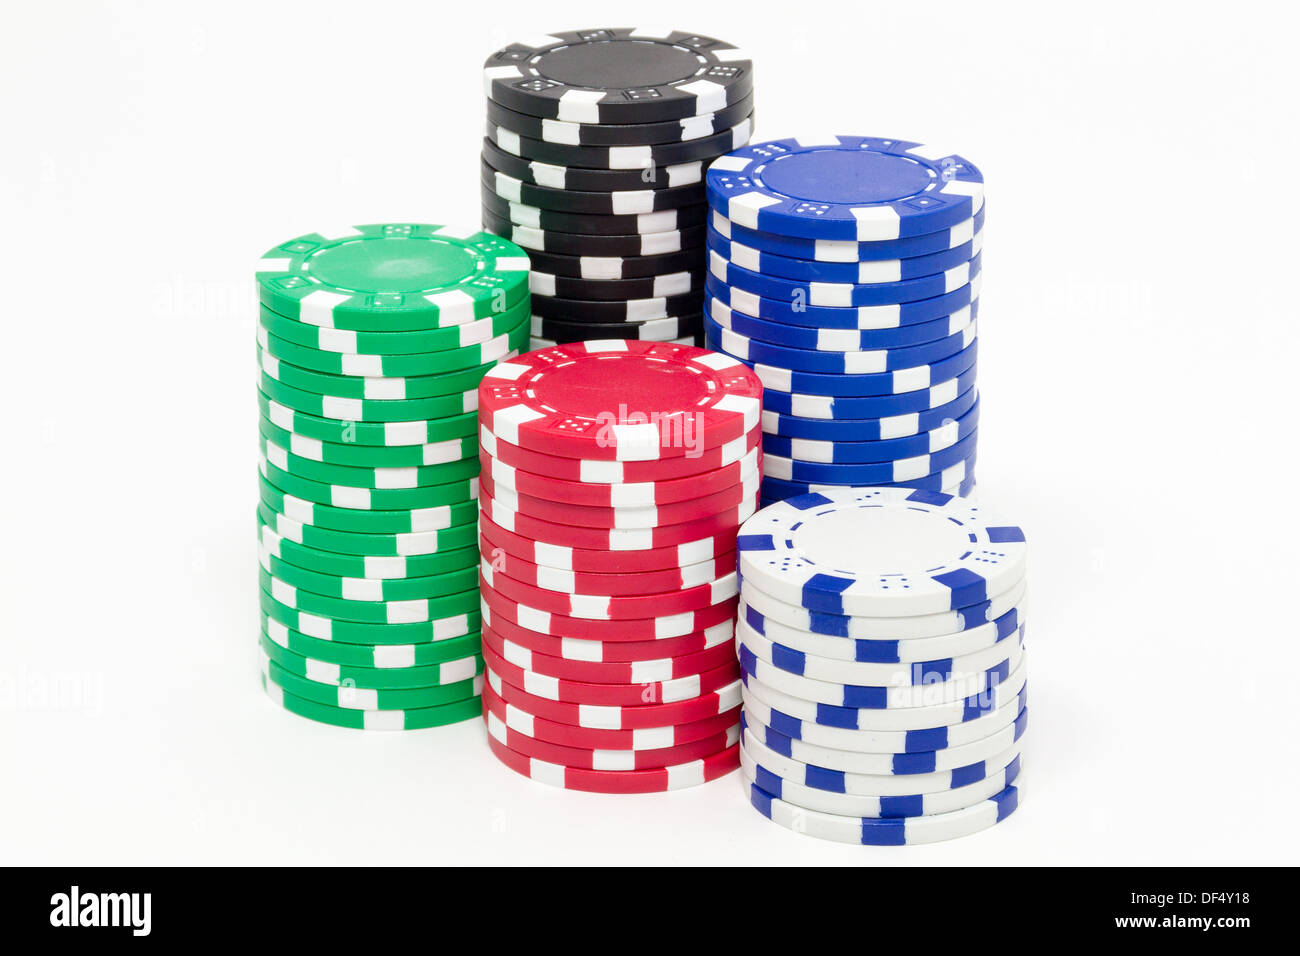 Des piles de jetons de poker isolé sur fond blanc Banque D'Images